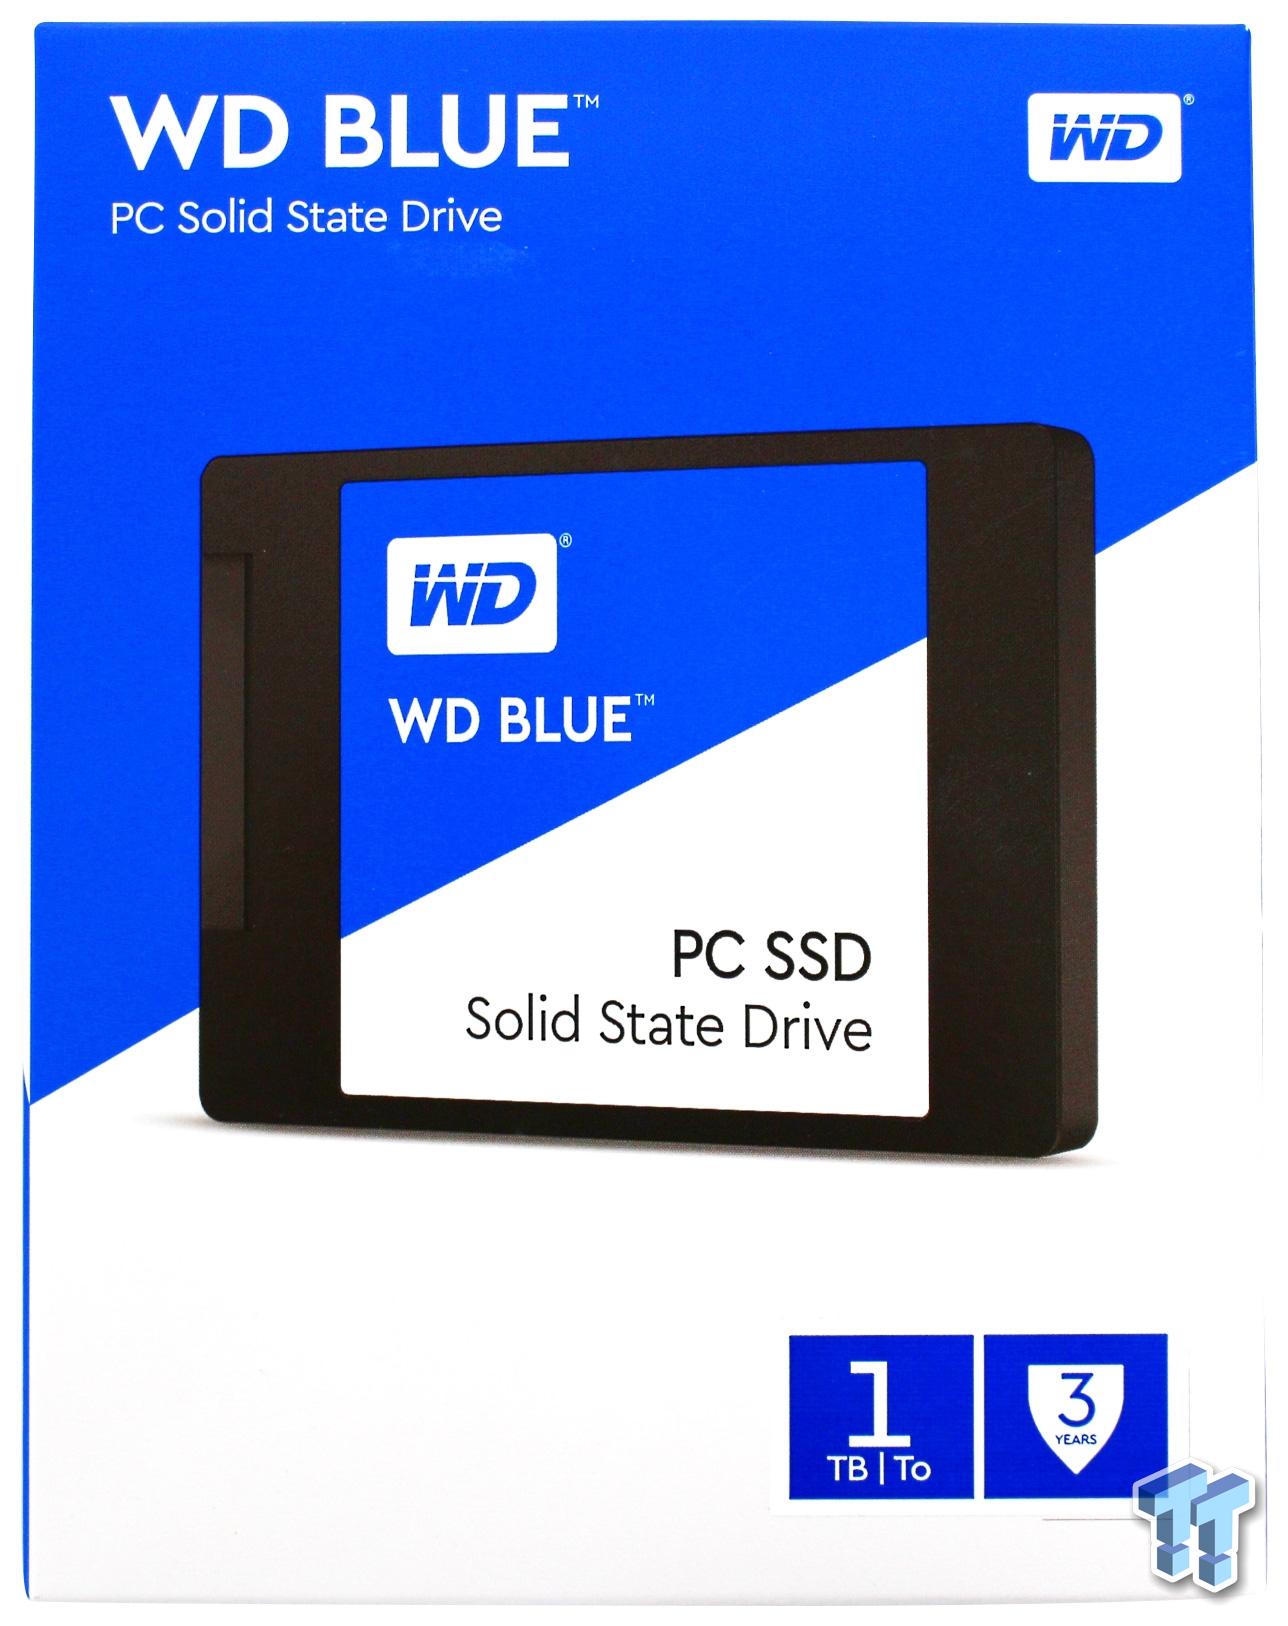 Western Digital Blue 1TB SATA III SSD Review | TweakTown